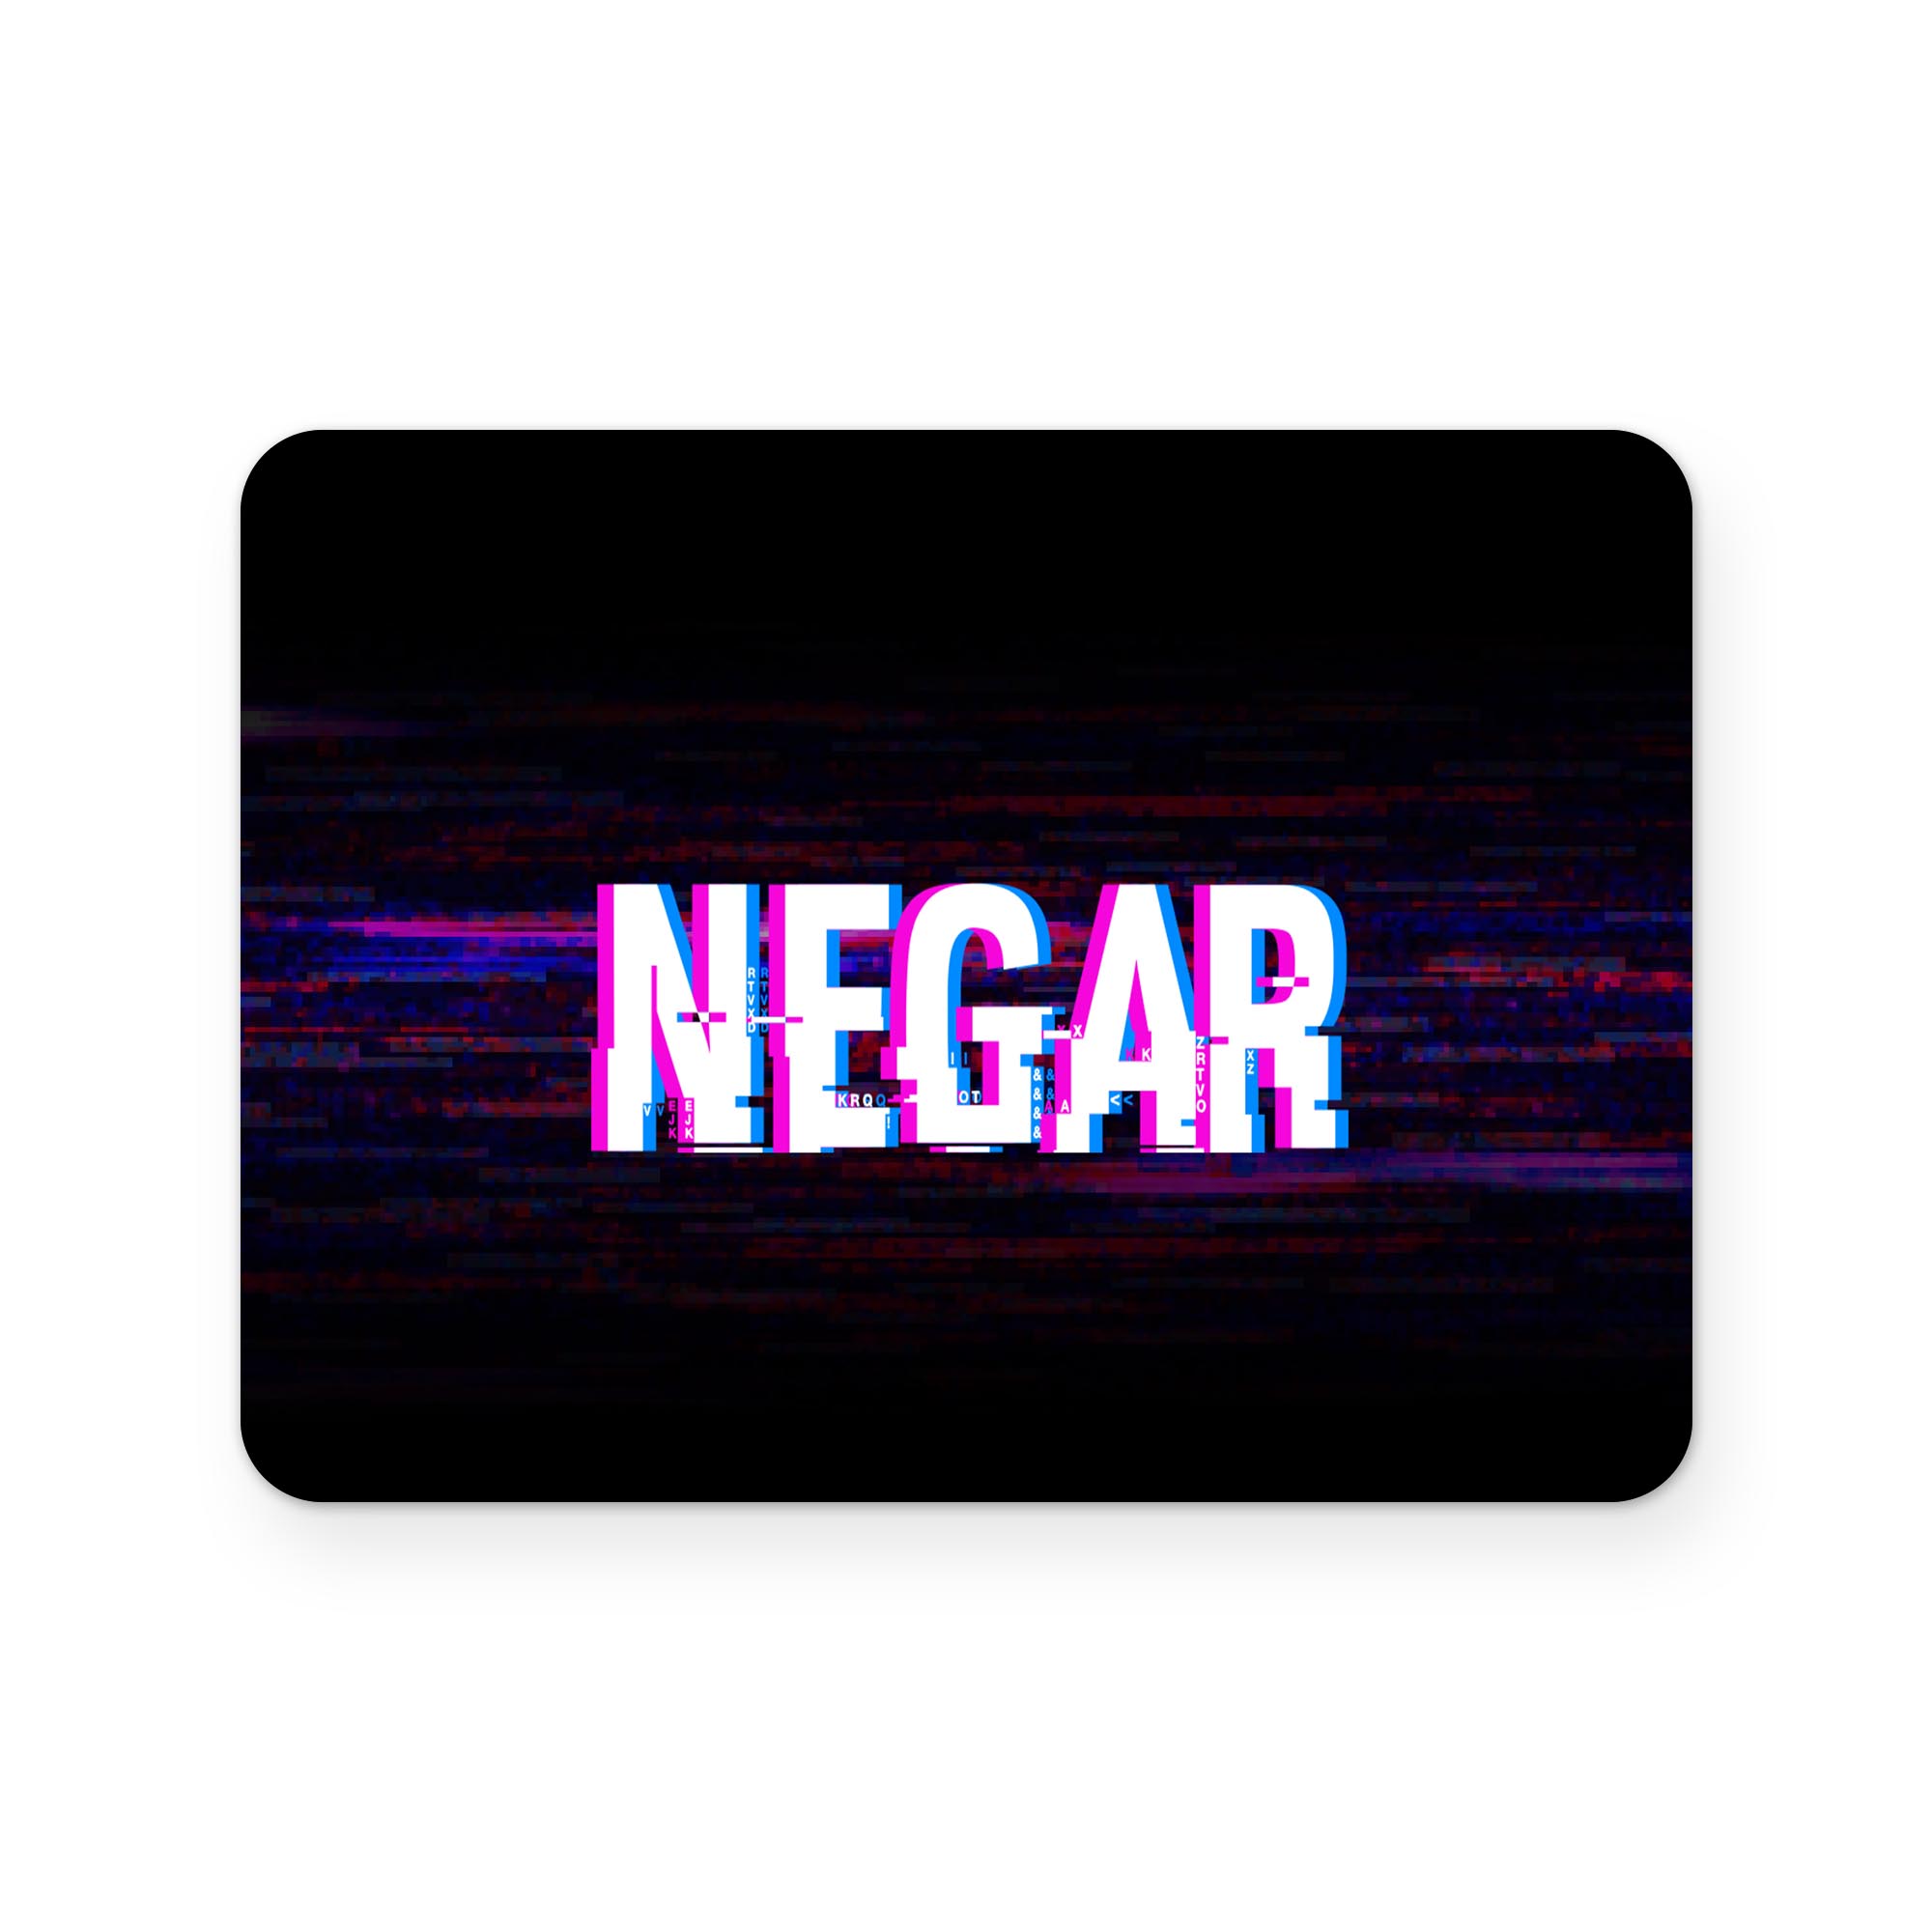 برچسب تاچ پد دسته بازی پلی استیشن 4 ونسونی طرح Negar